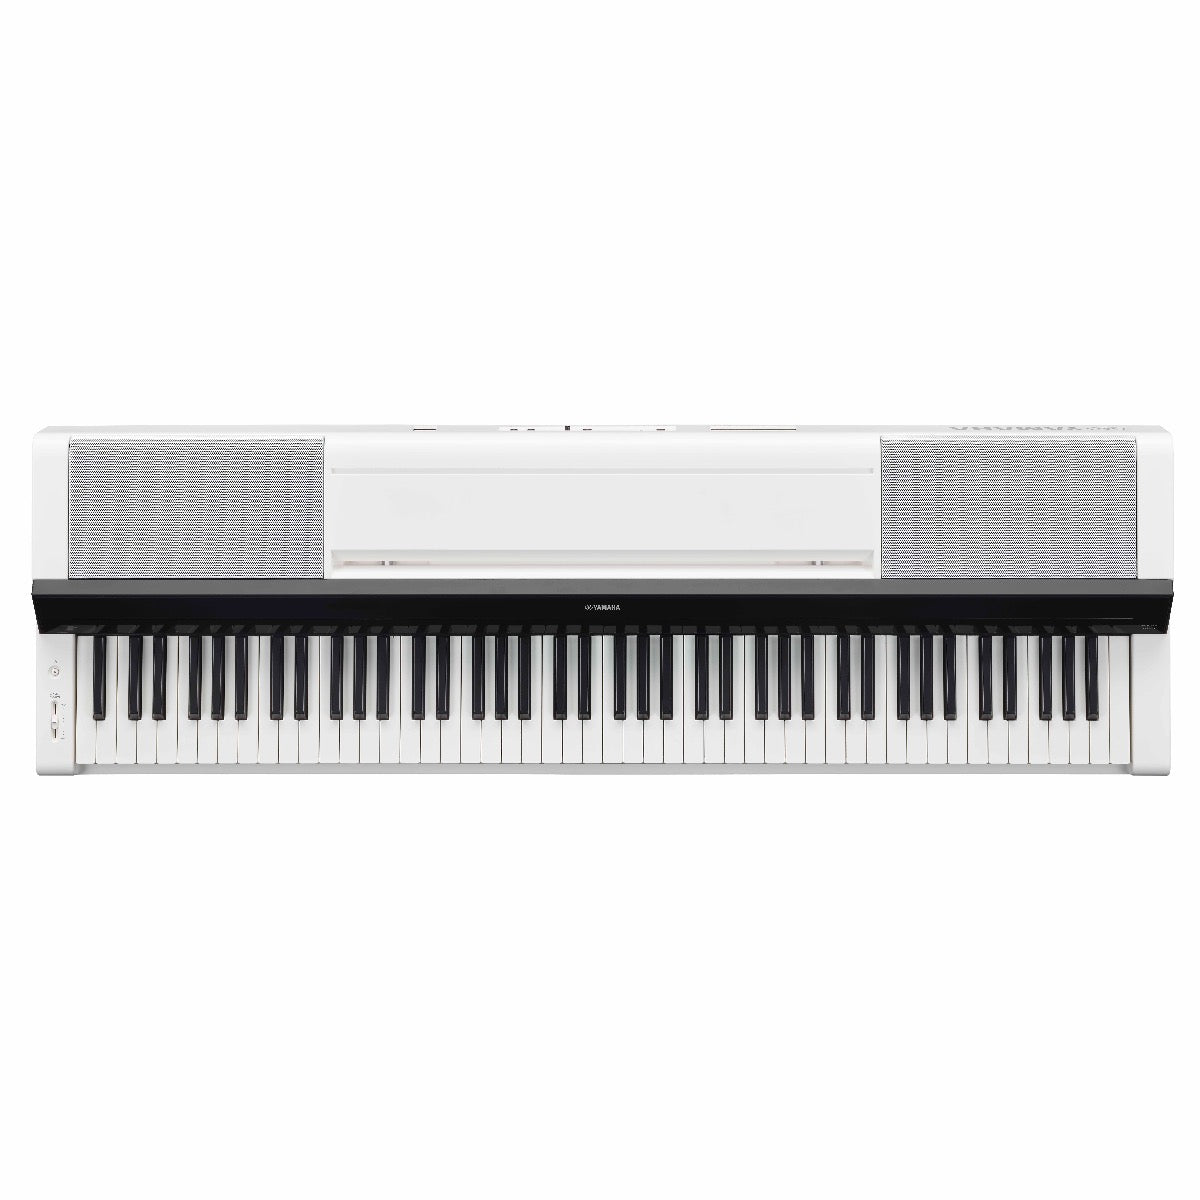 Yamaha P-S500 Digital Piano - White, View 3